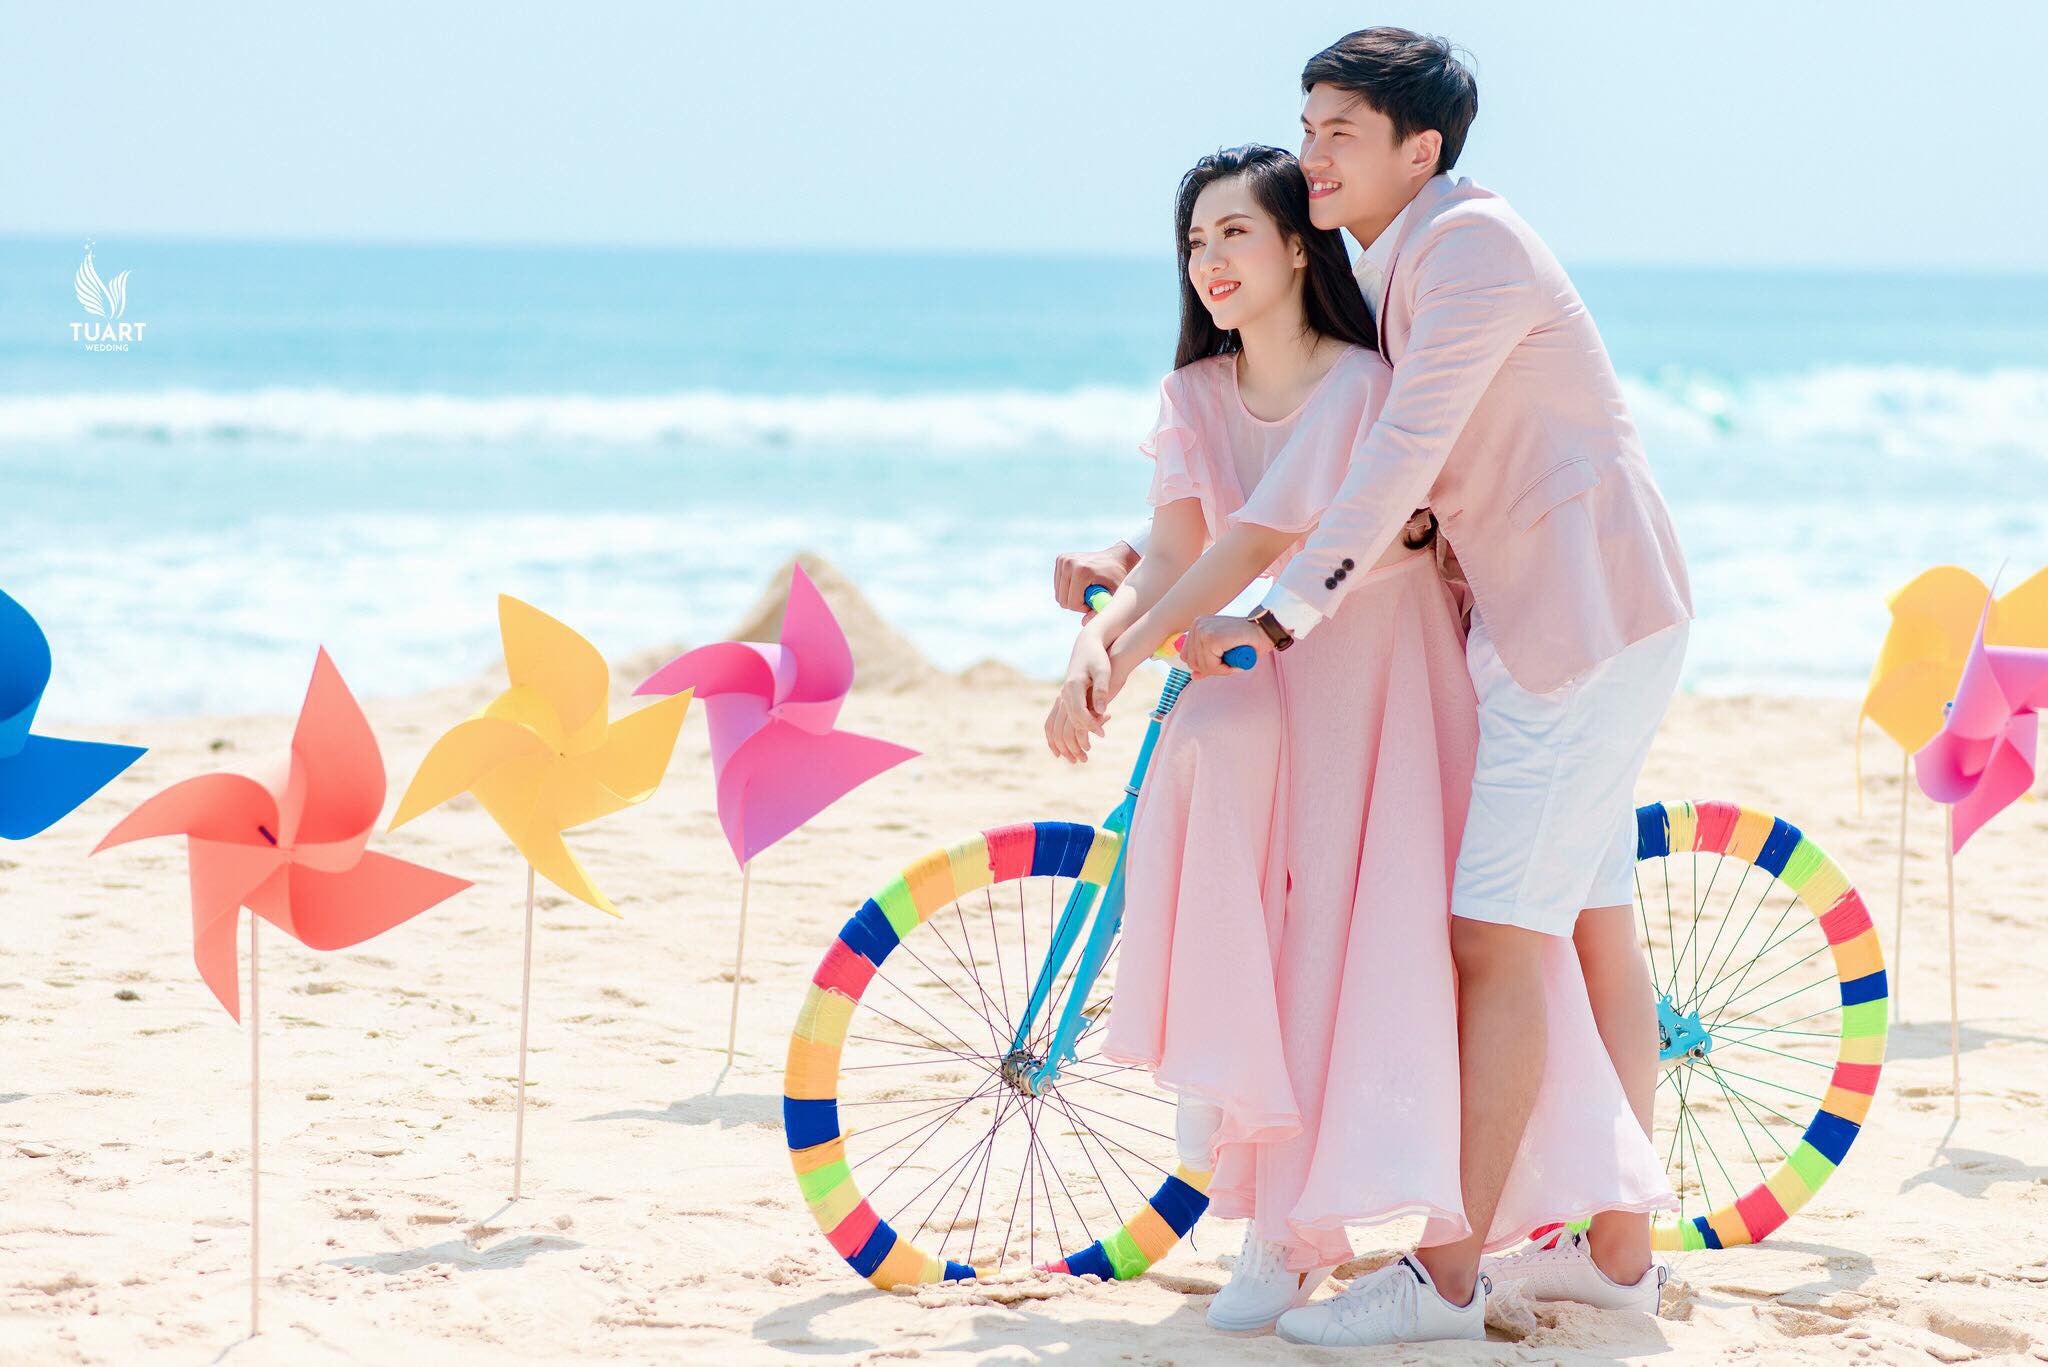 Album chụp ảnh cưới Mỹ Khê-Chong chóng quay khi trời xanh có nắng 4